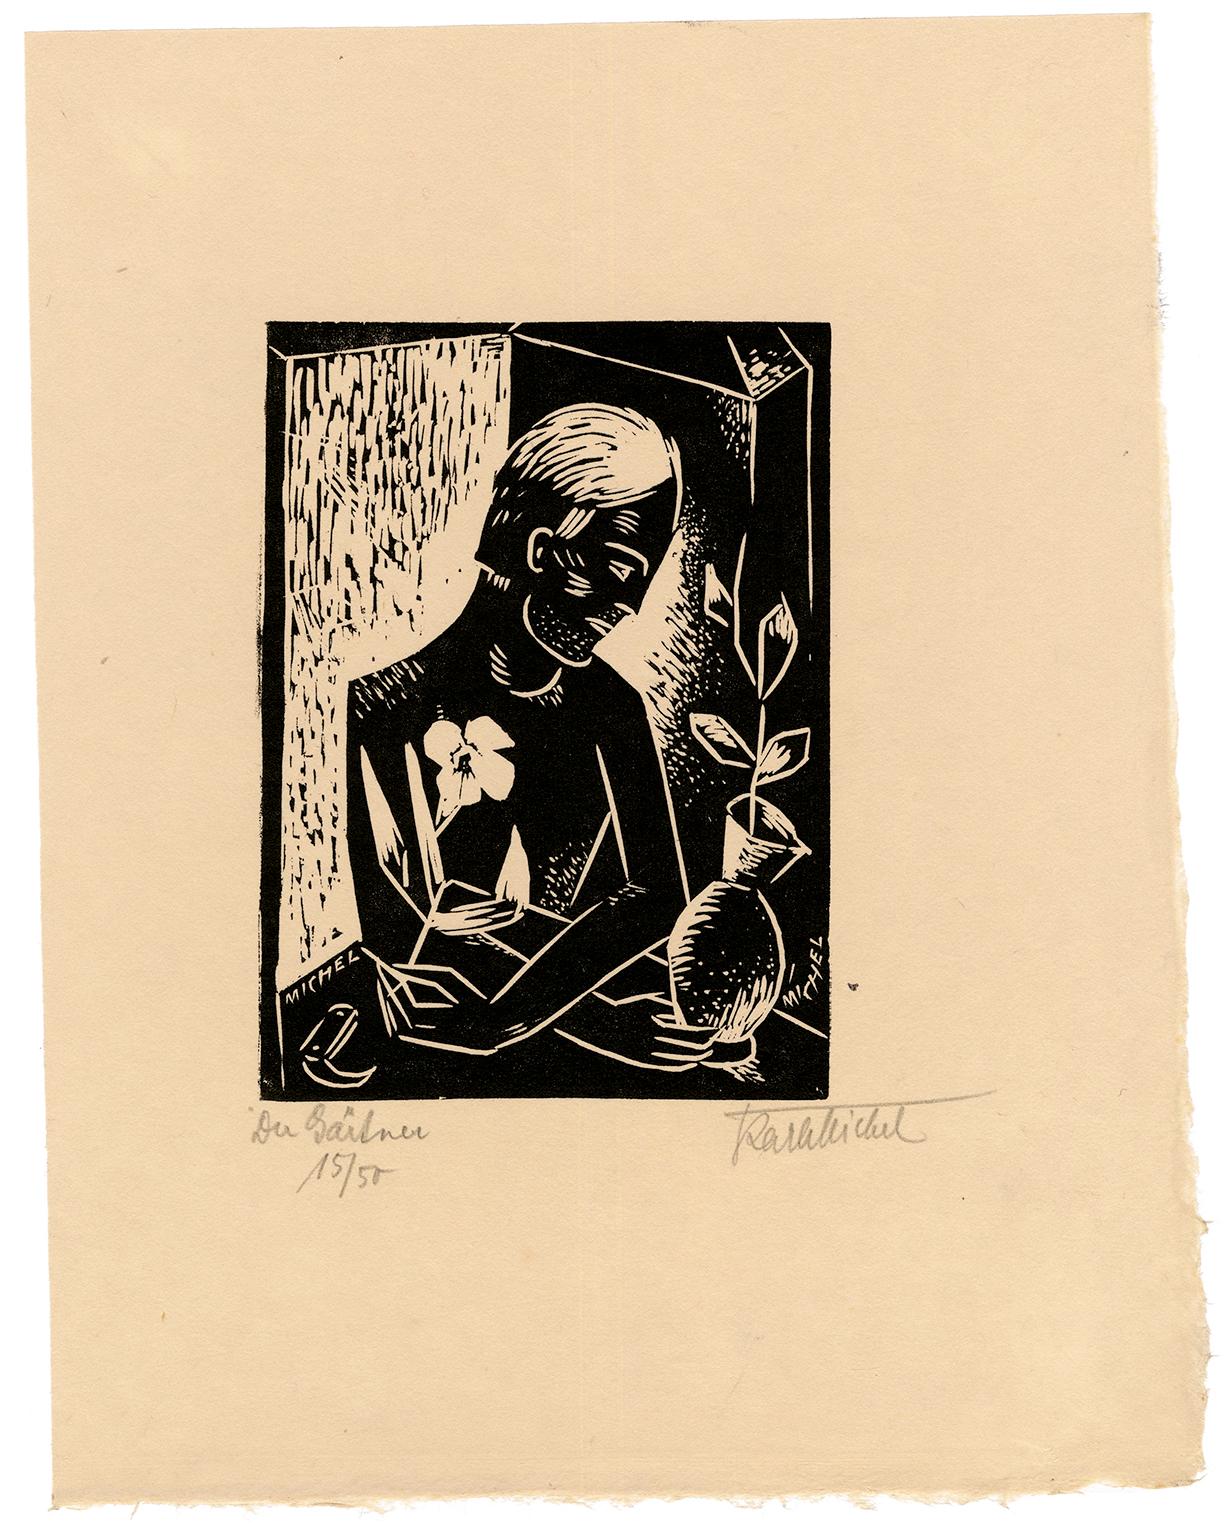 'Der Gartner' (The Gardener) — 1920s German Expressionism - Print by Karl Michel